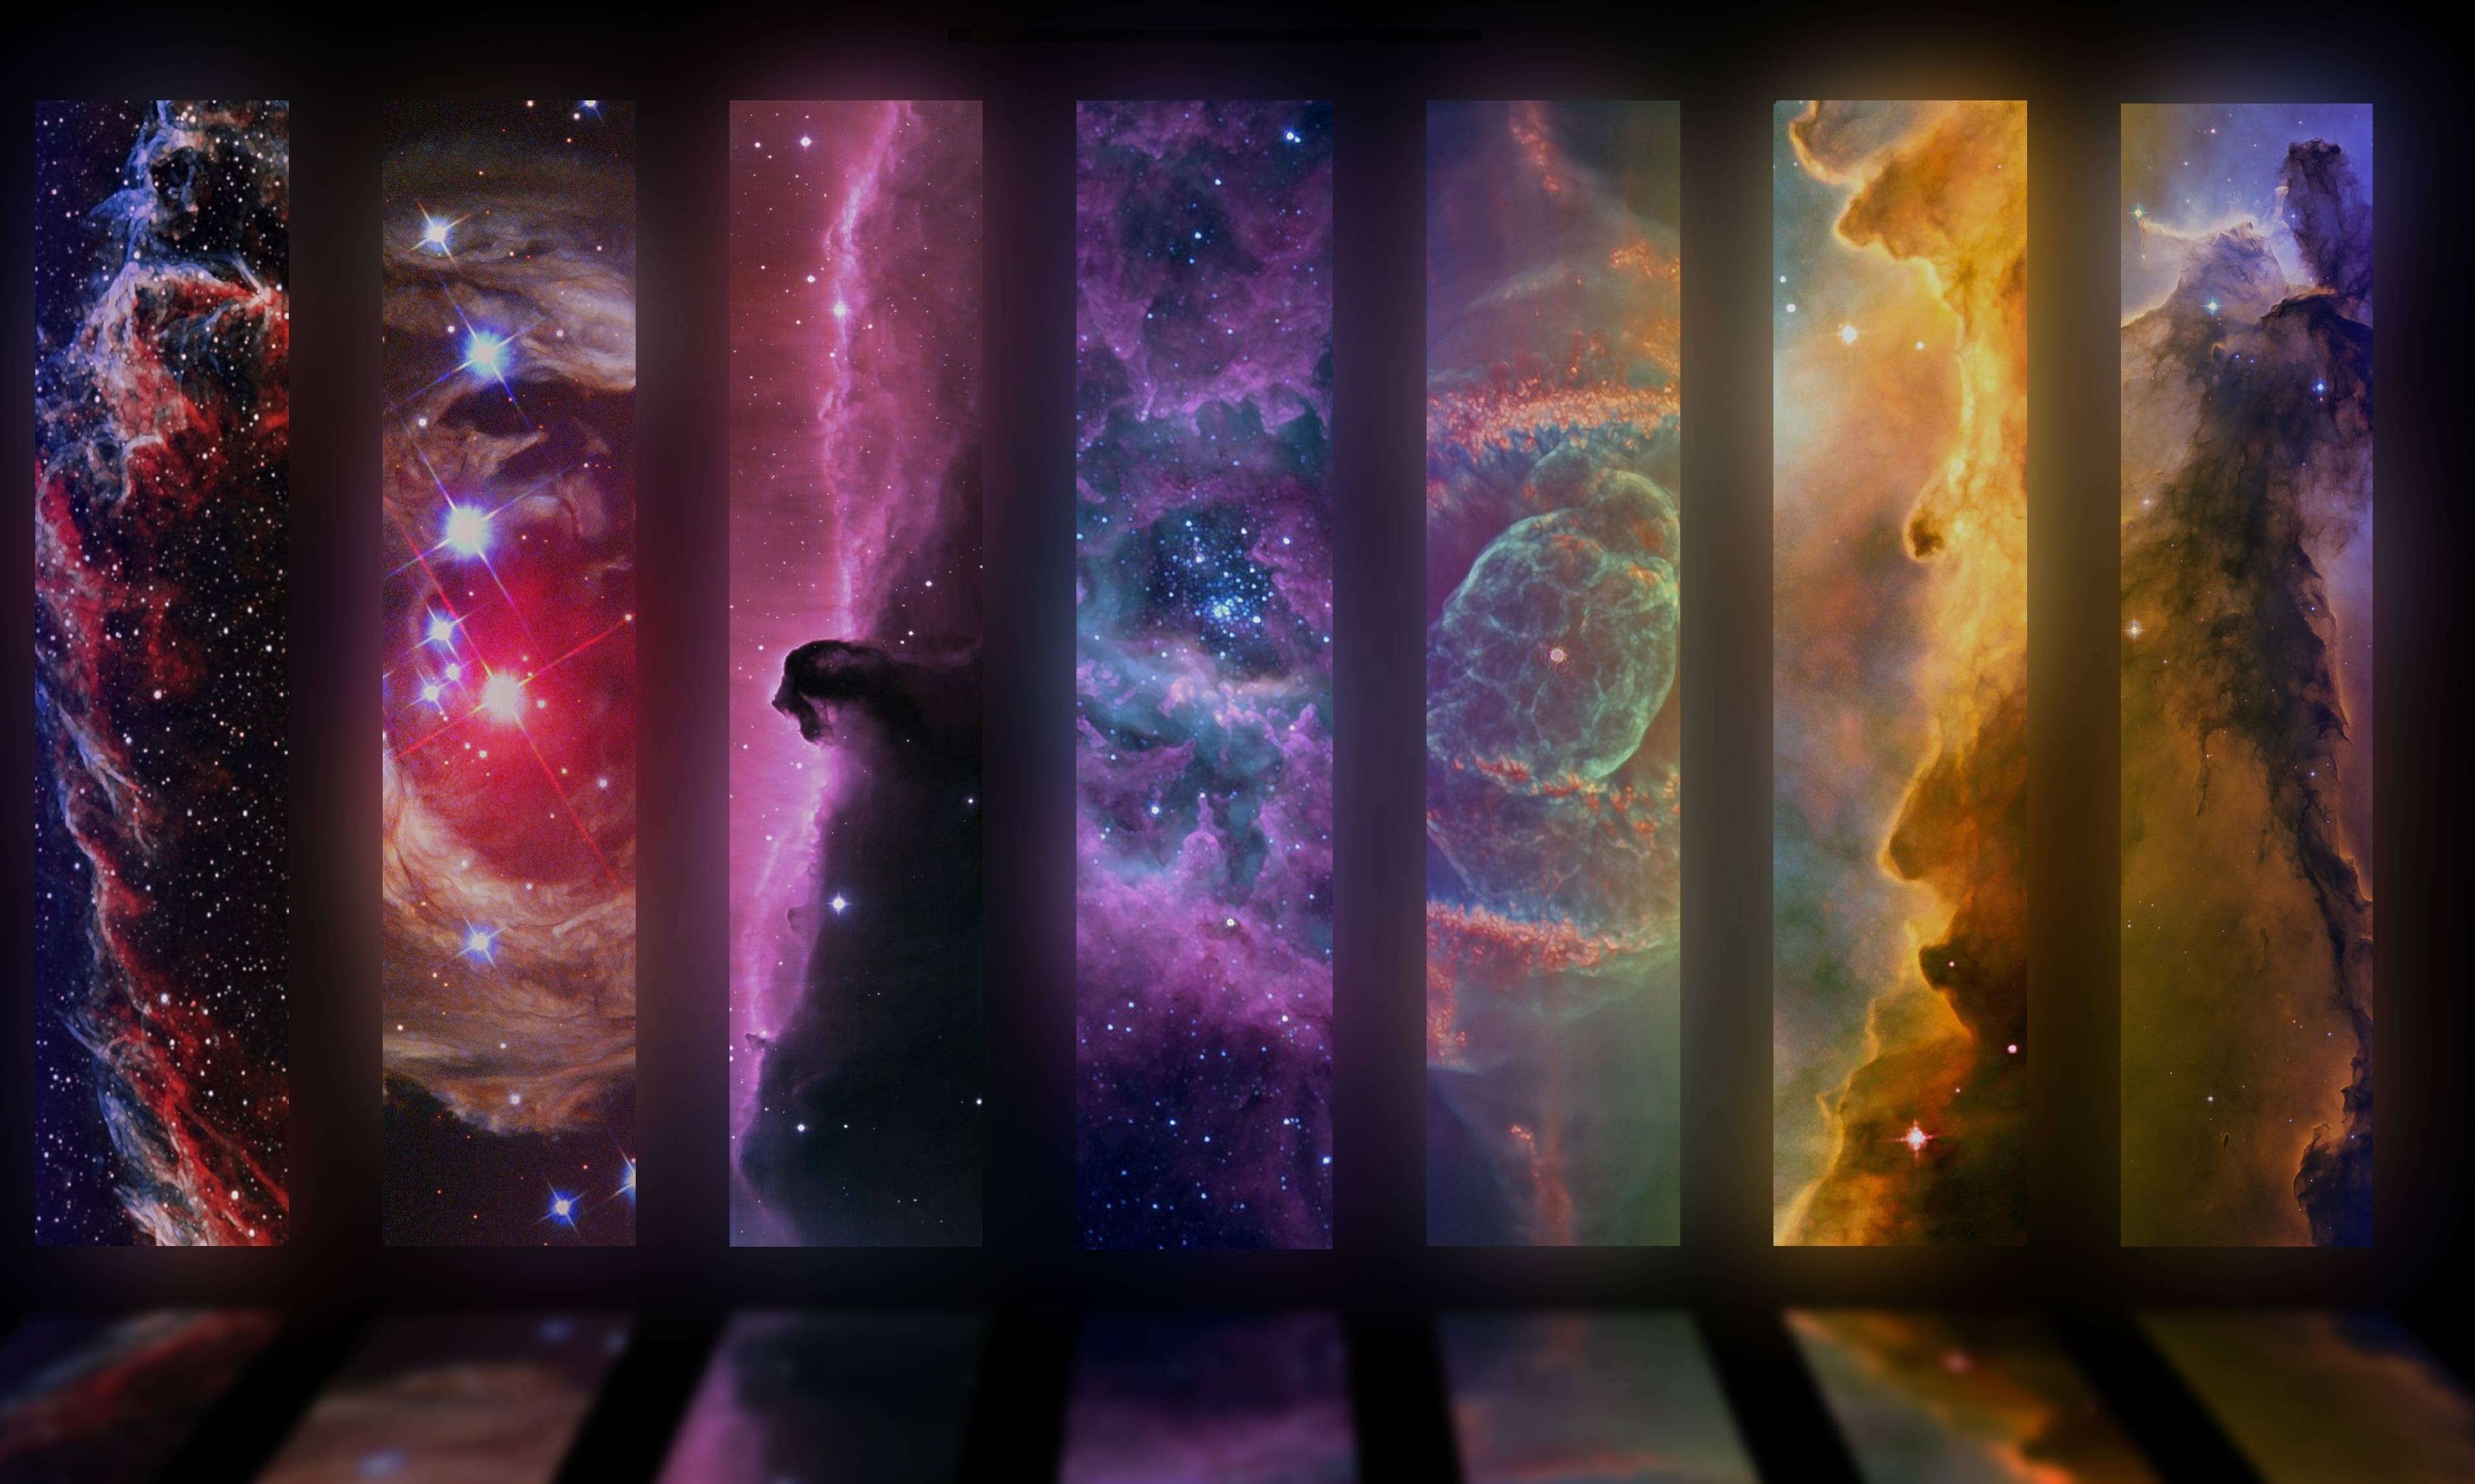 Nebula HD Wallpaper